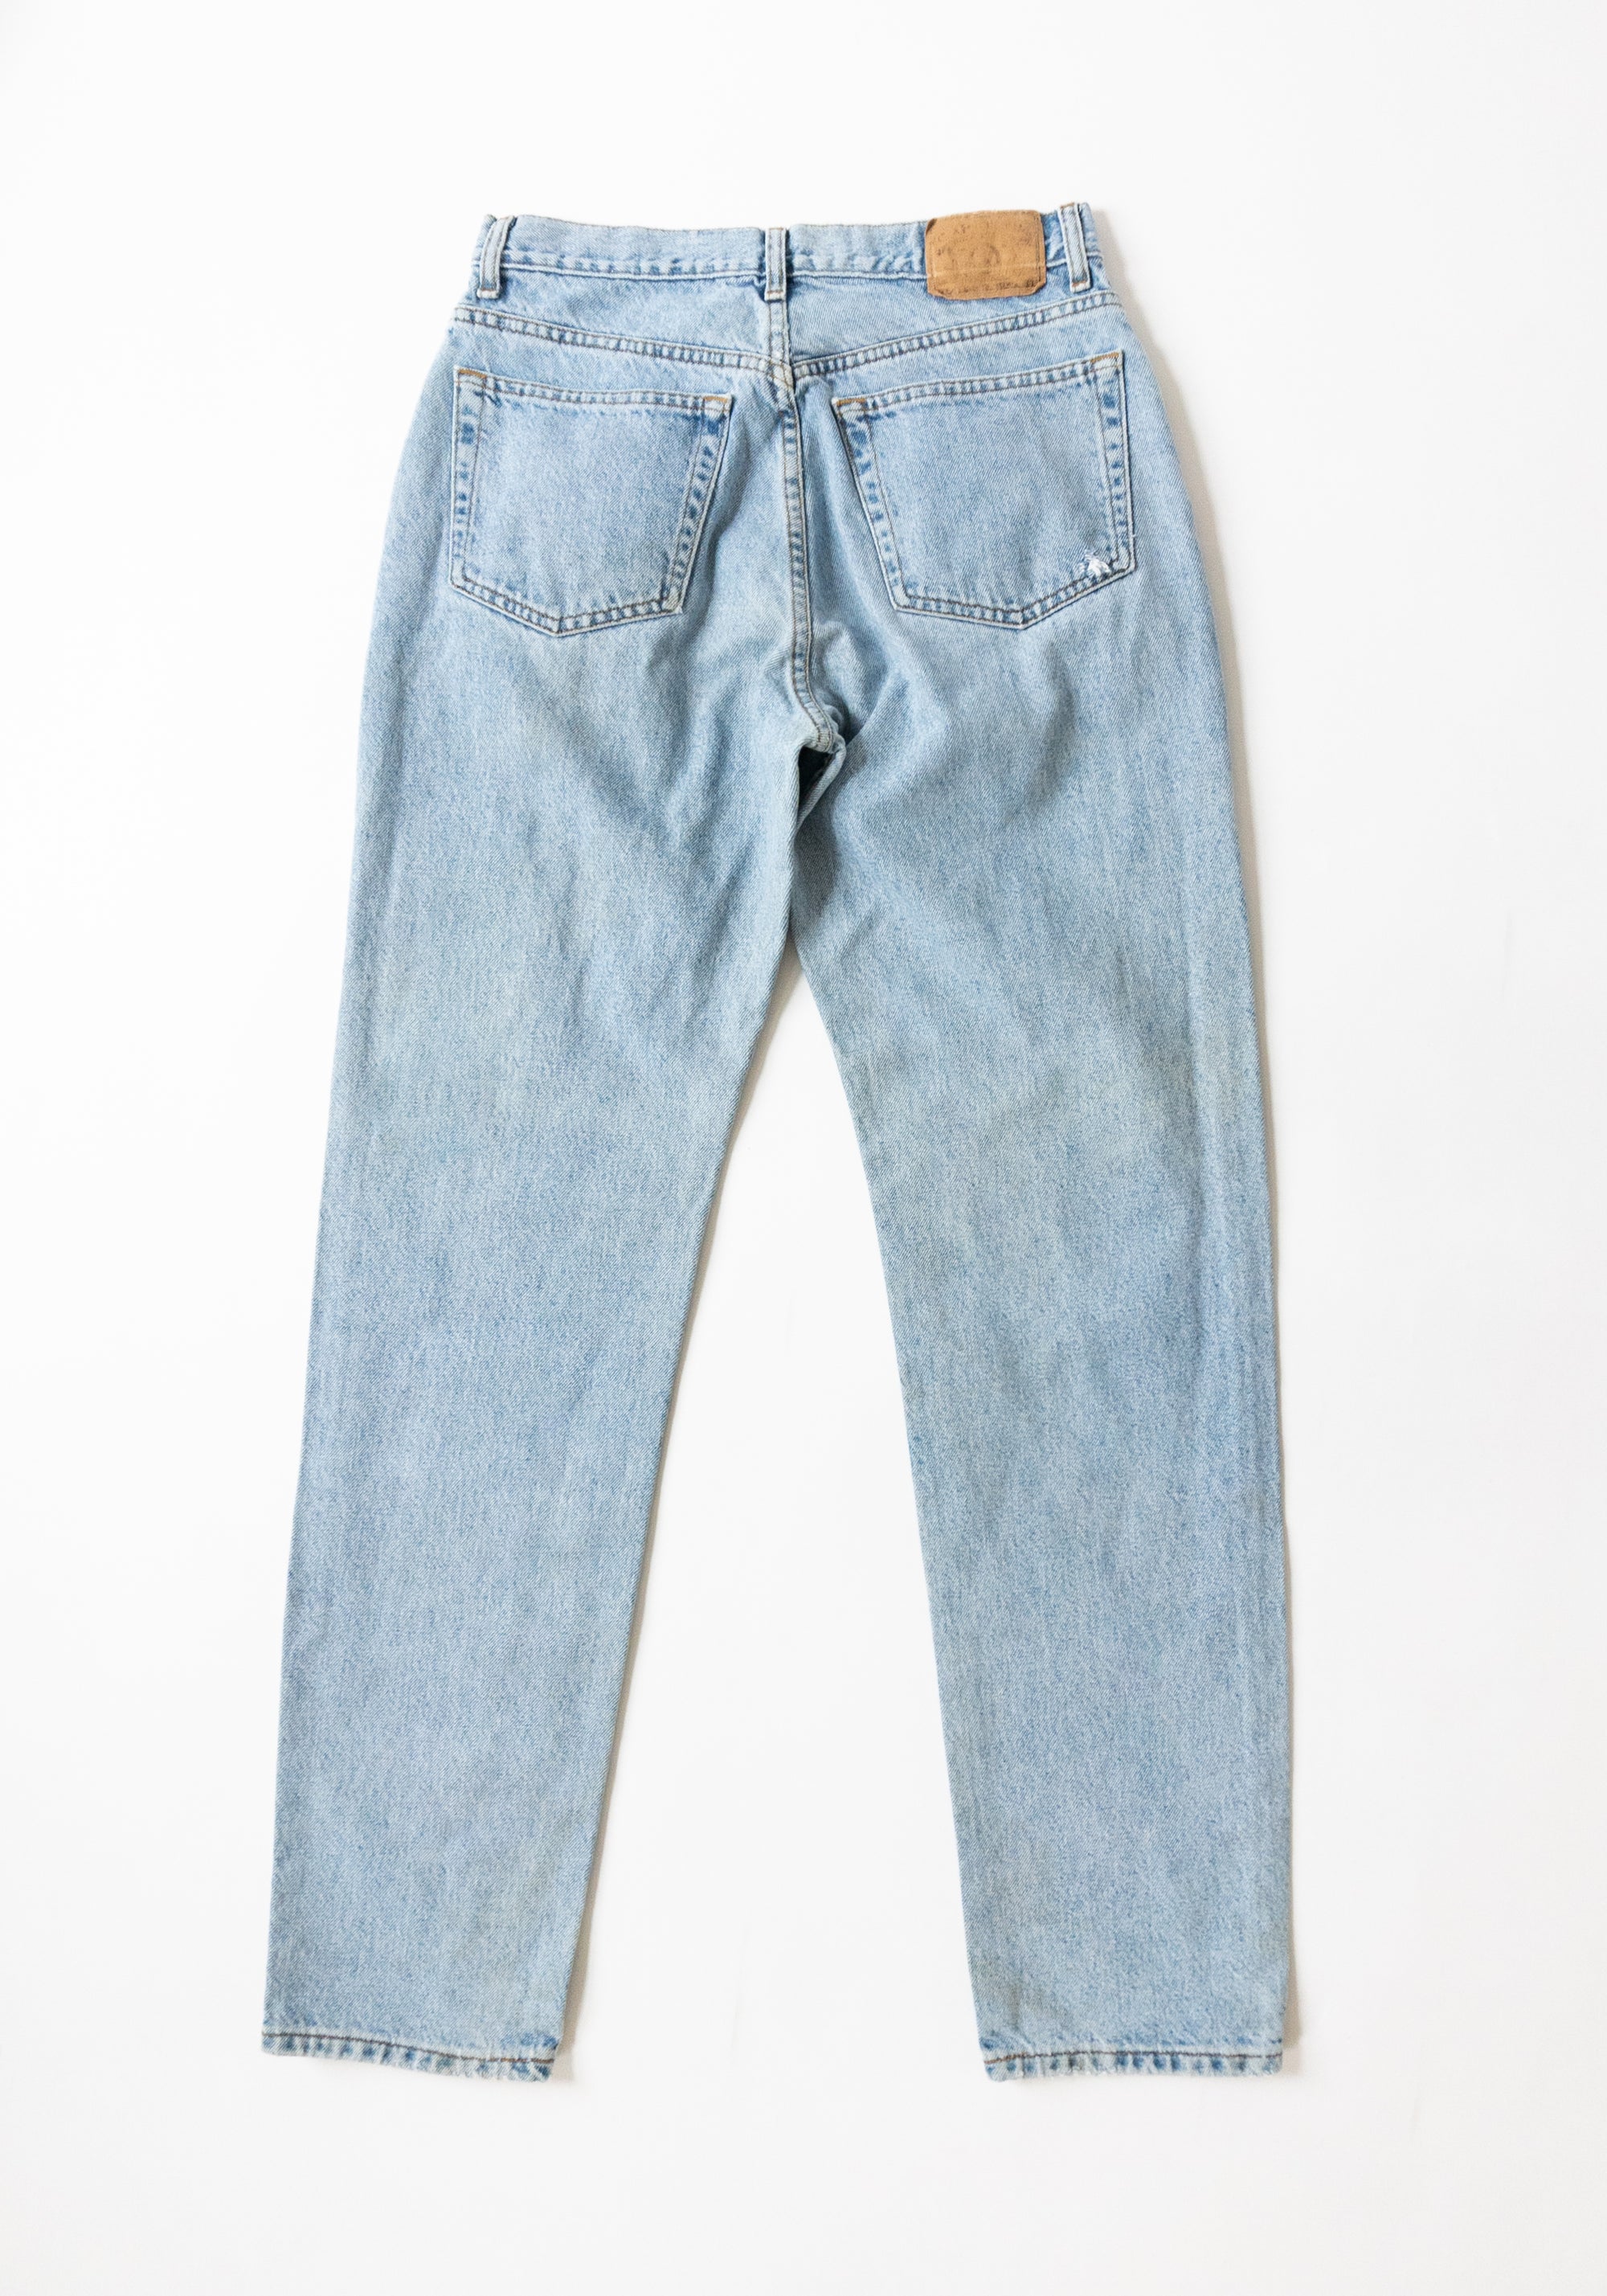 Vintage 90s Light Wash Gap Jeans